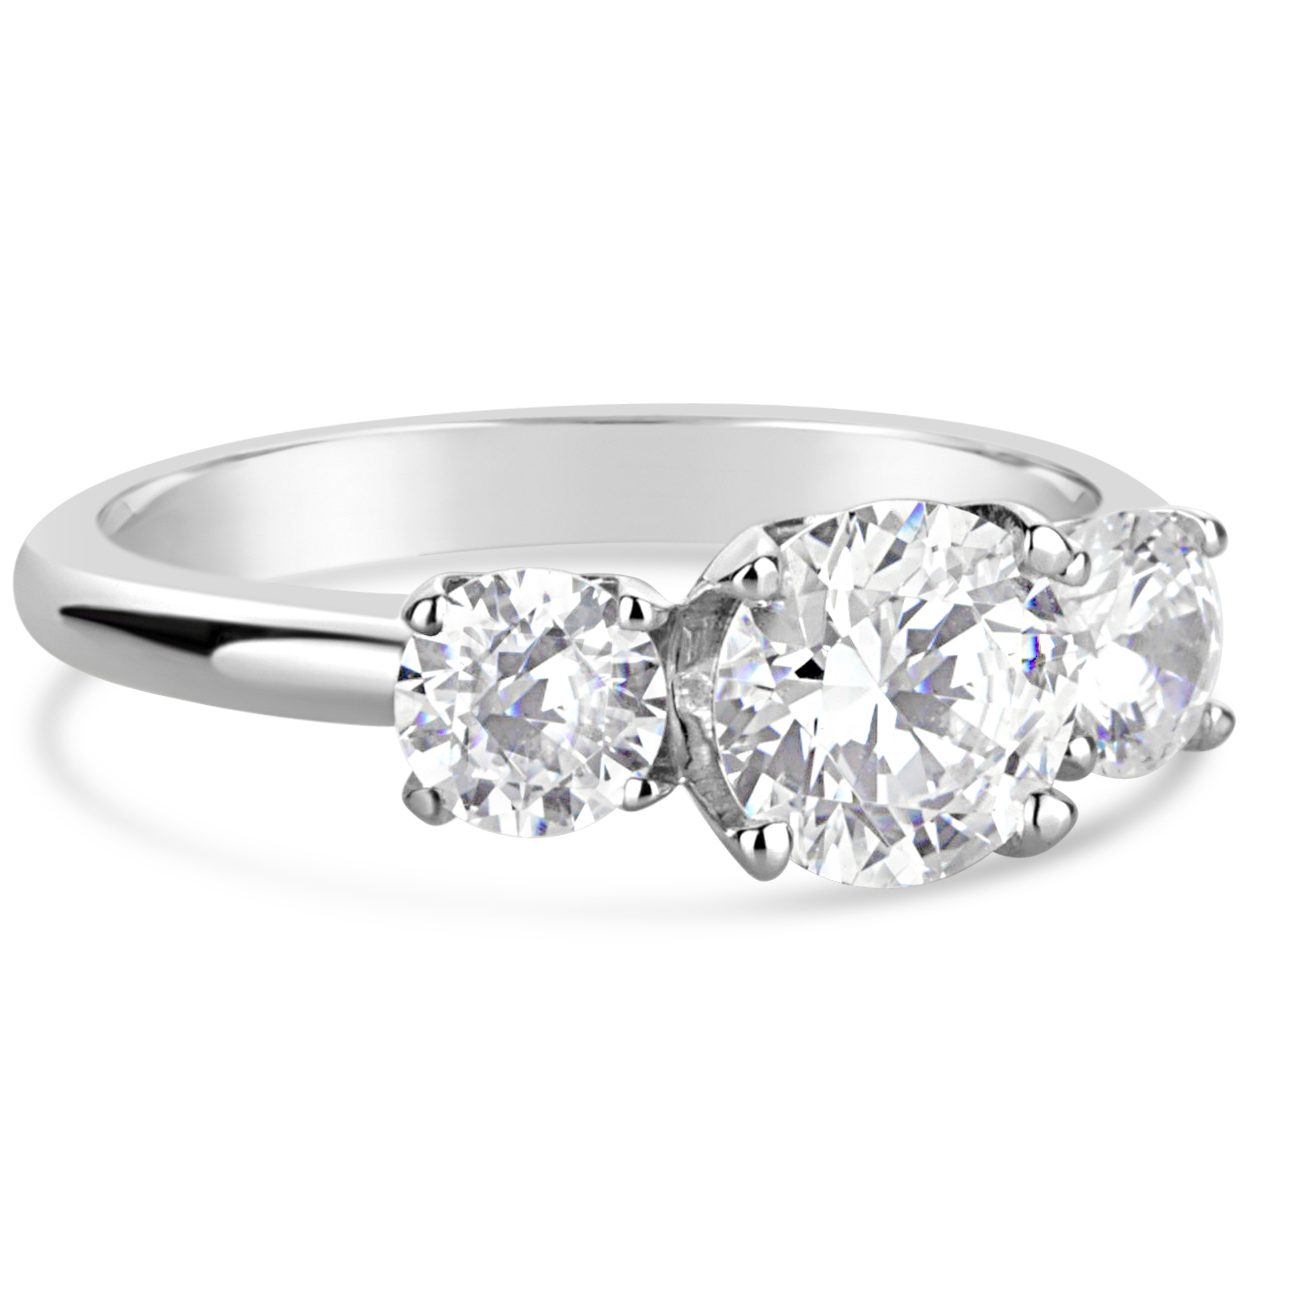 14k white gold three diamond anniversary engagement ring